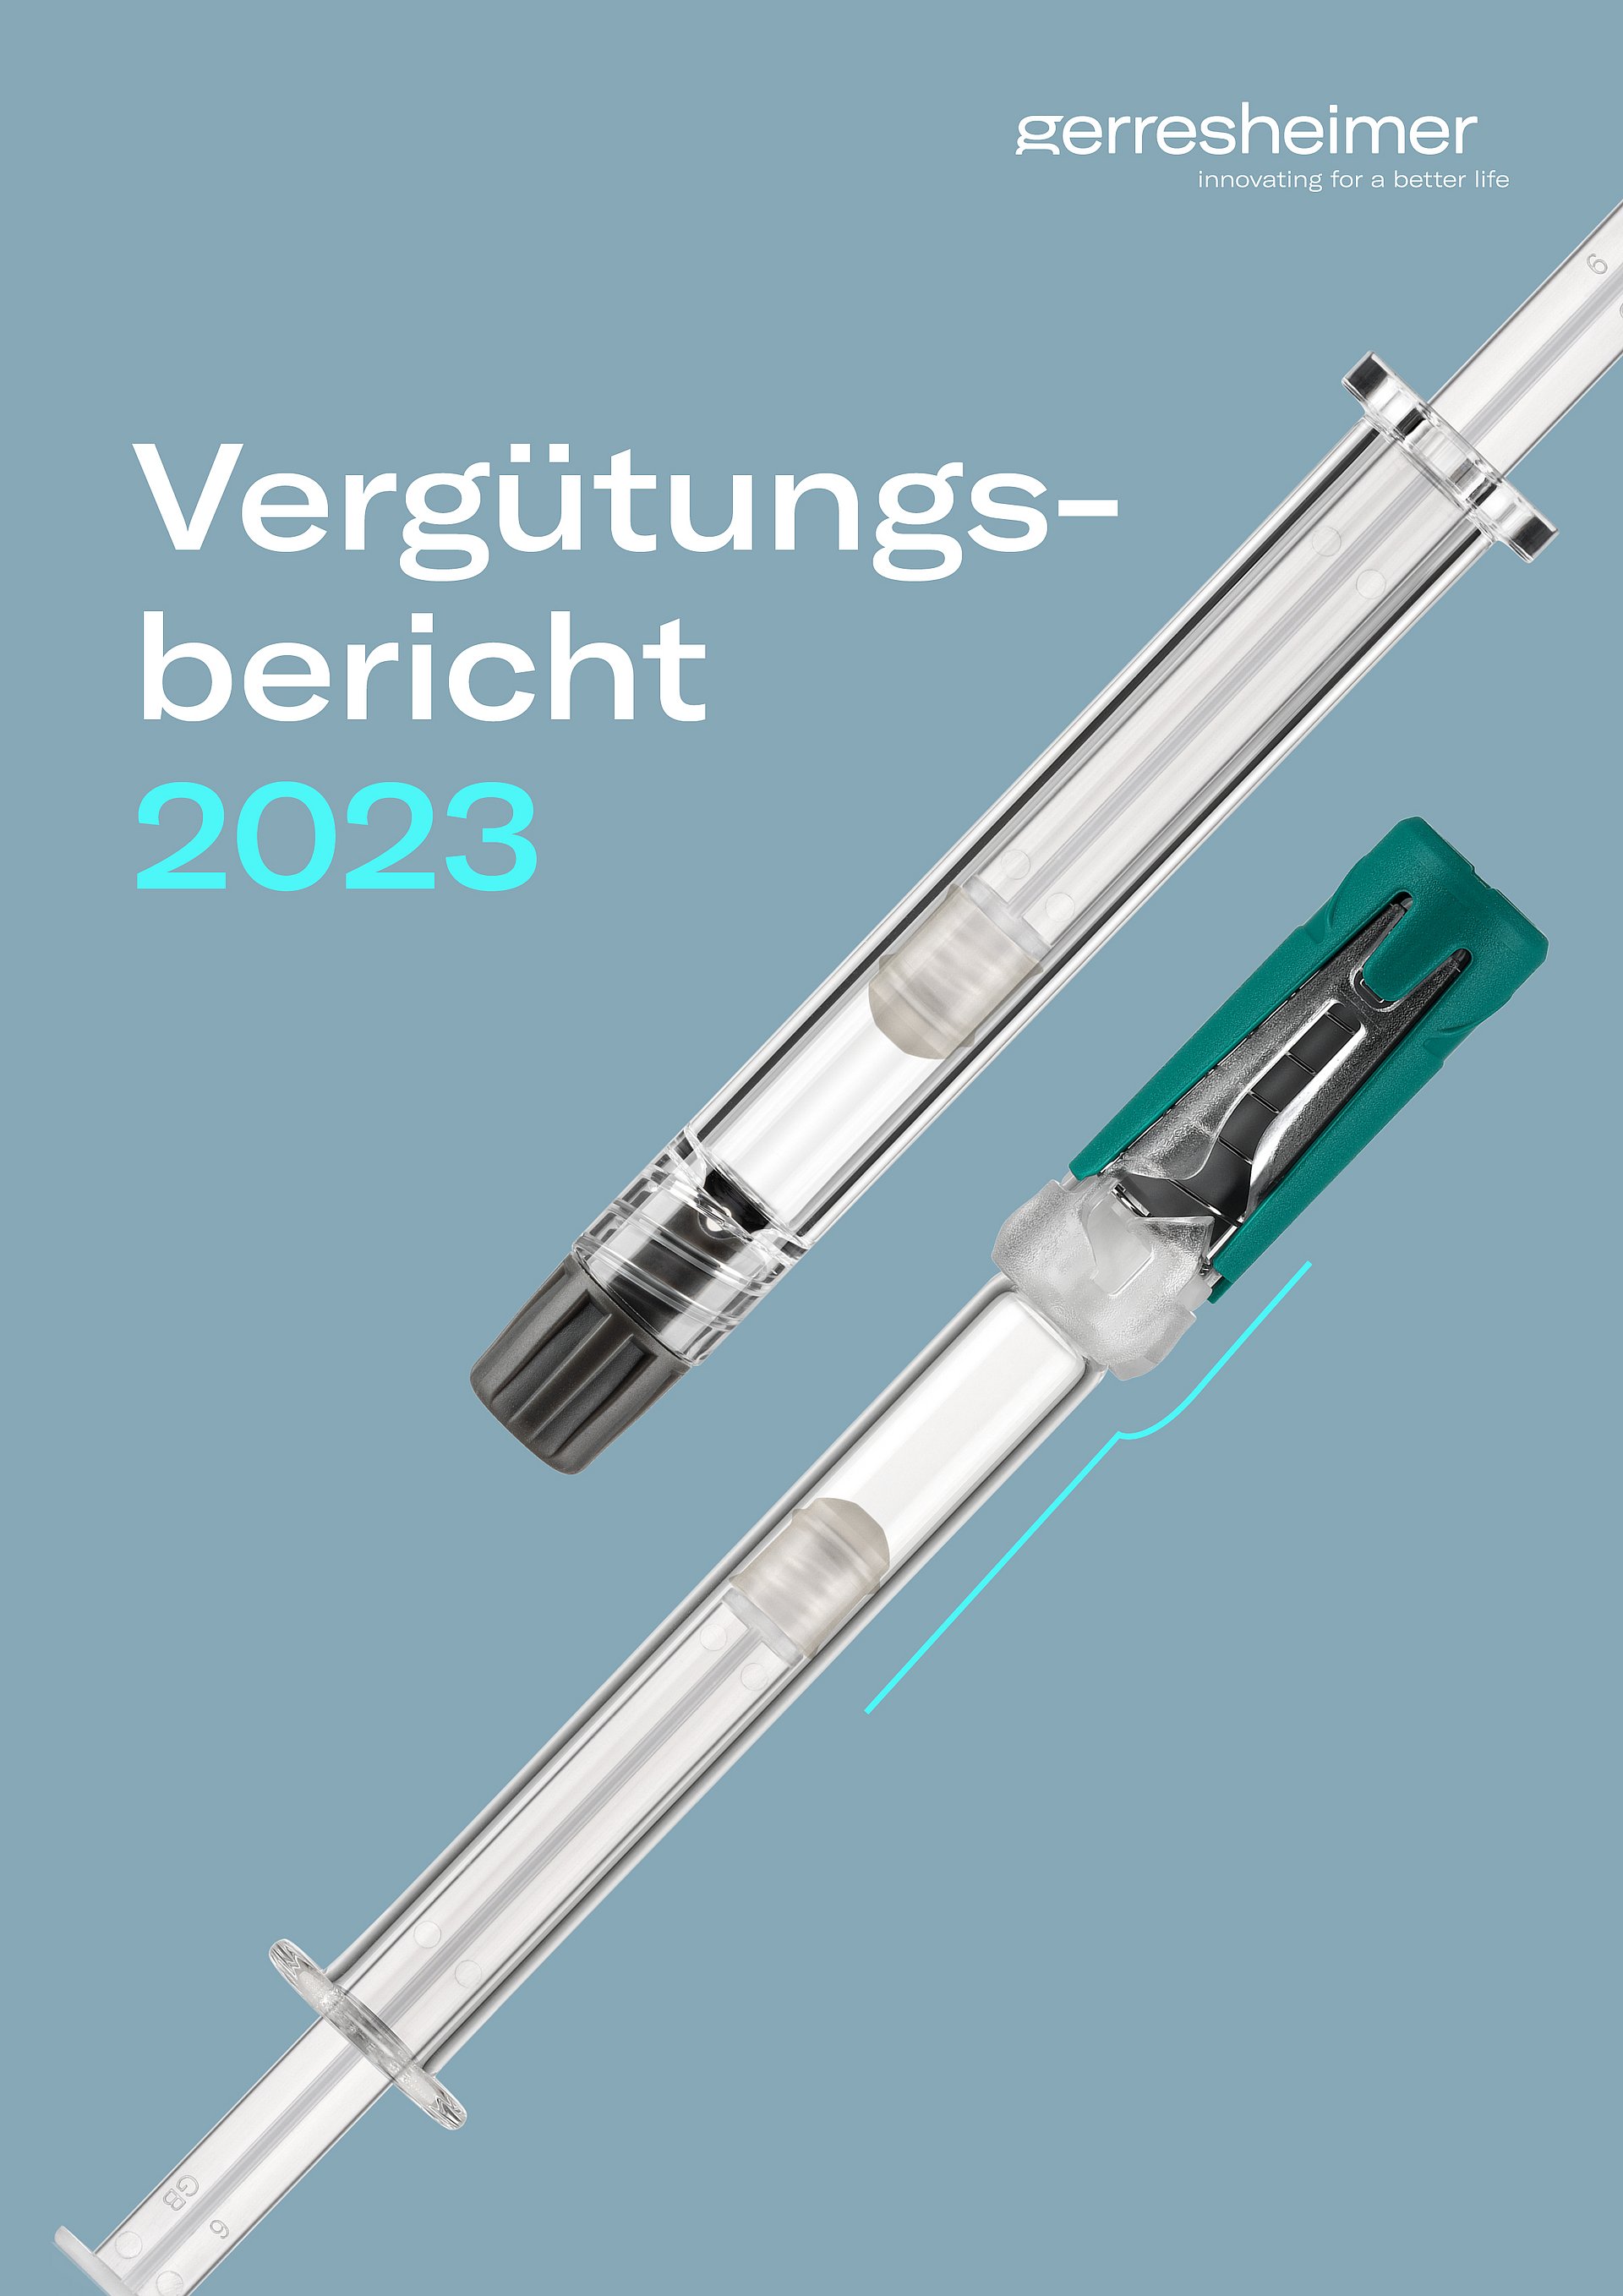 Geschäftsbericht 2023 - Gerresheimer AG